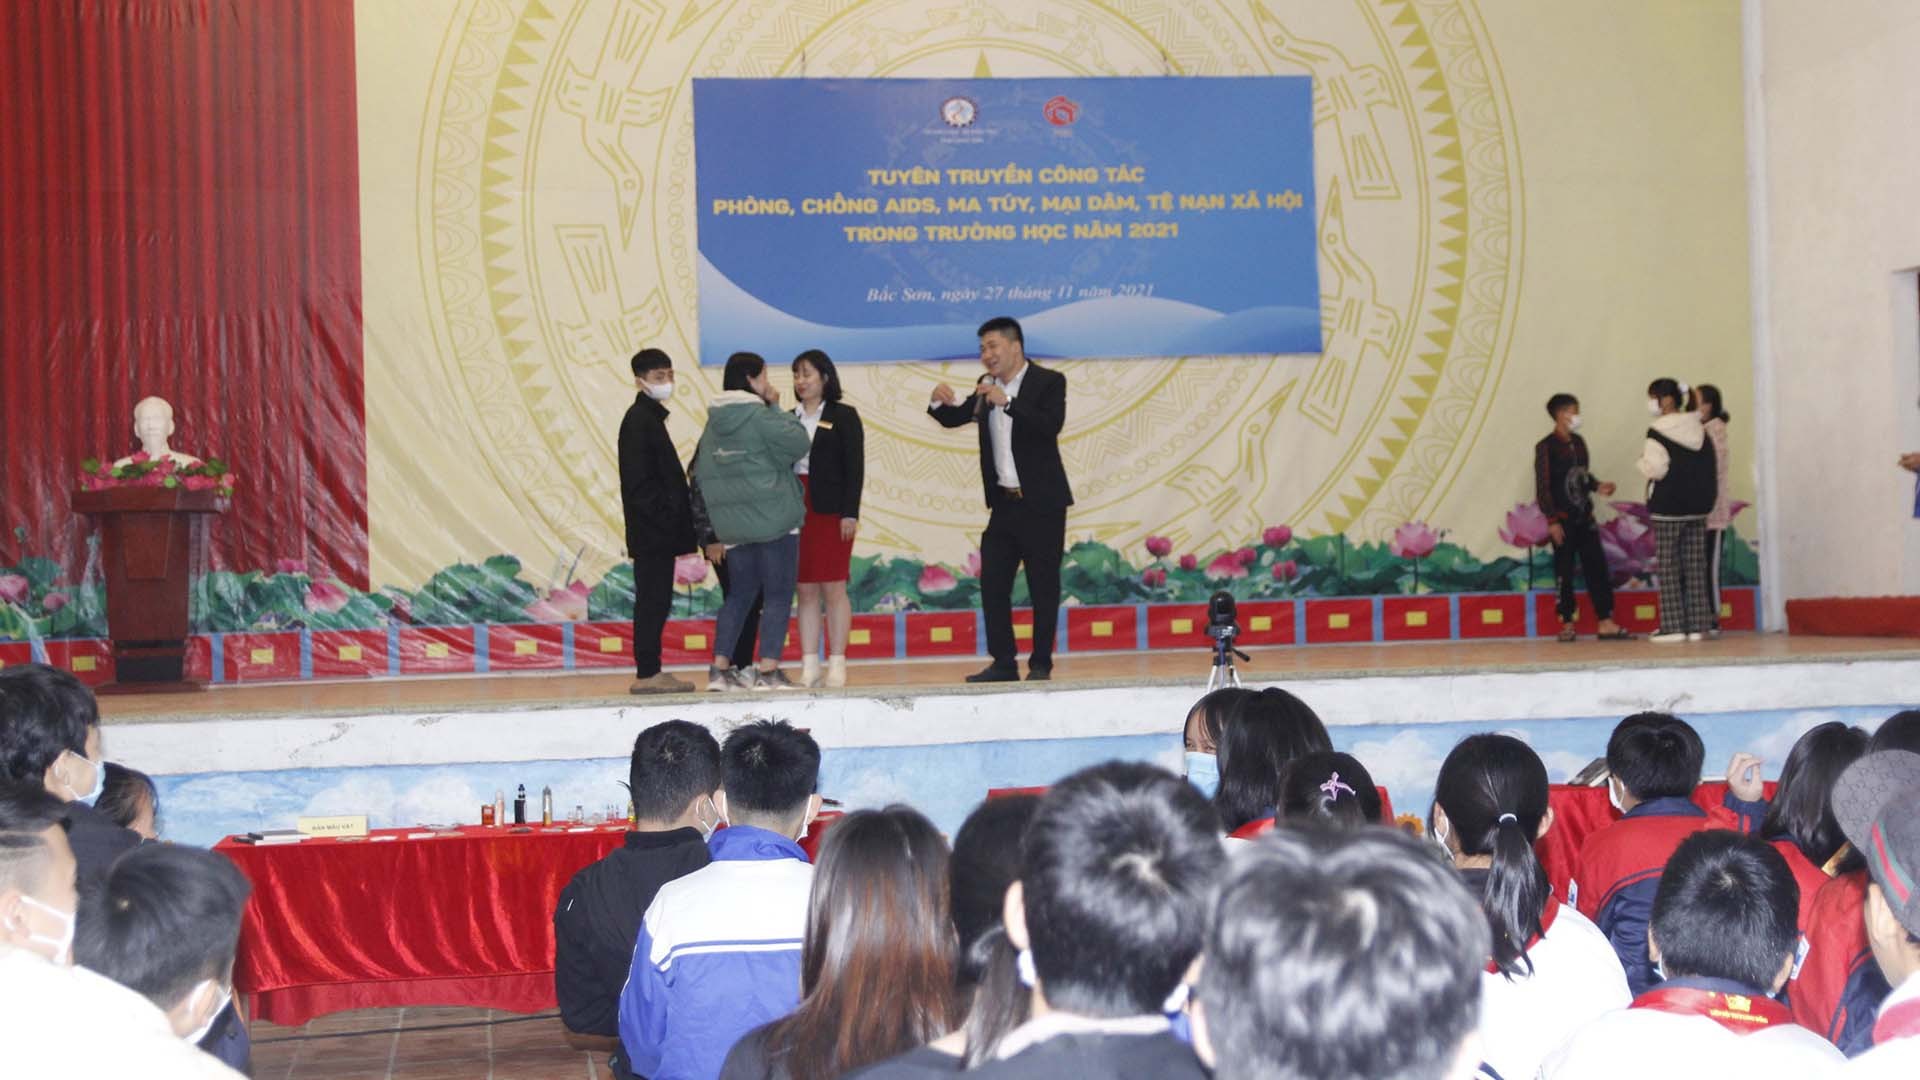 Lạng Sơn cũng là địa phương tiên phong trong thực hiện thực hiện 5 nhiệm vụ phòng chống AIDS, ma túy, mại dâm trong trường học năm 2021 theo kế hoạch 599/KH – BGDĐT.